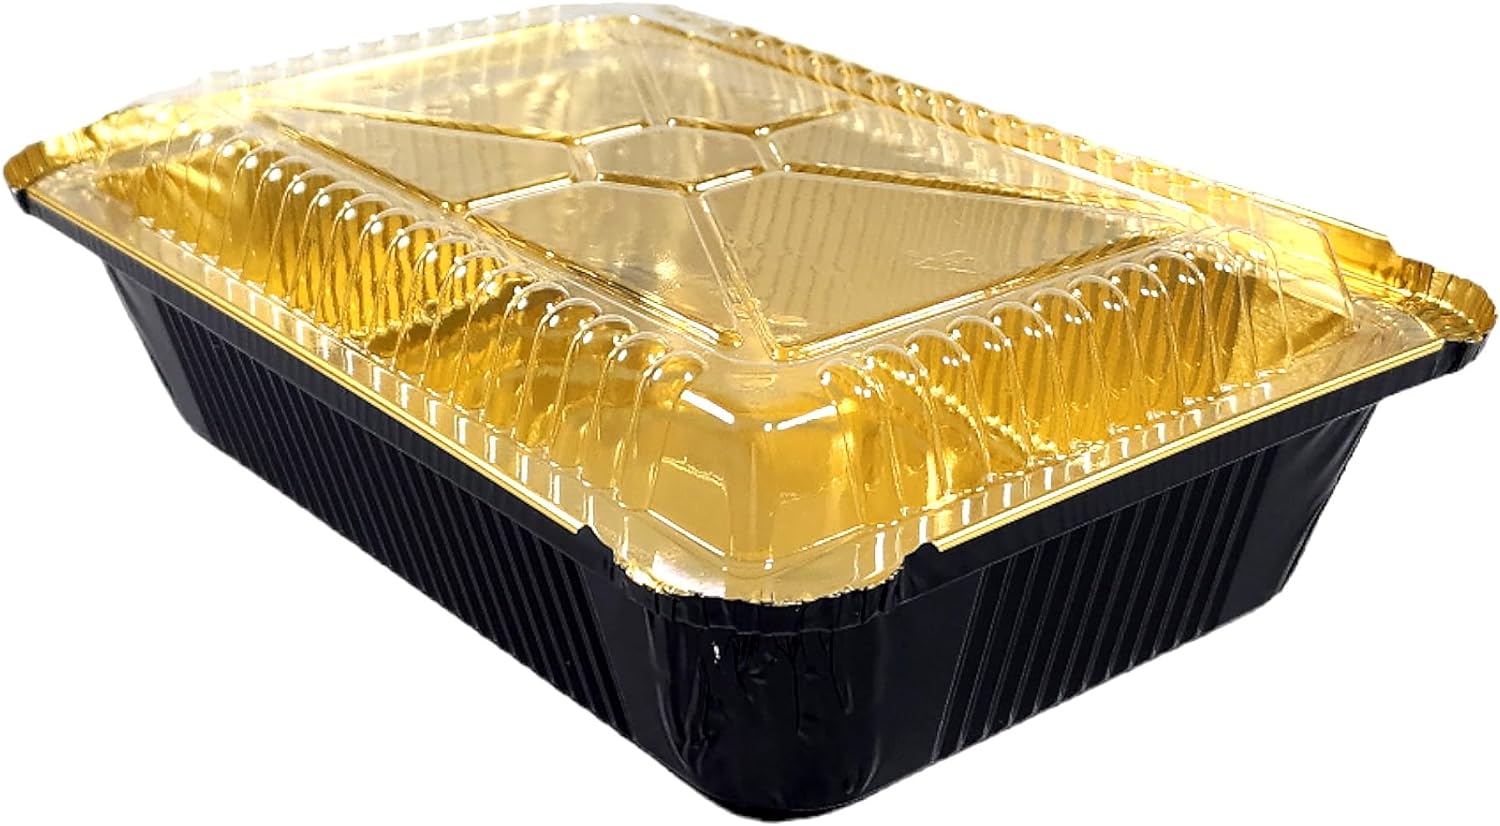 2 1/4 lb. Oblong Black & Gold Aluminum Foil Pans Take Out Heavy Duty C –